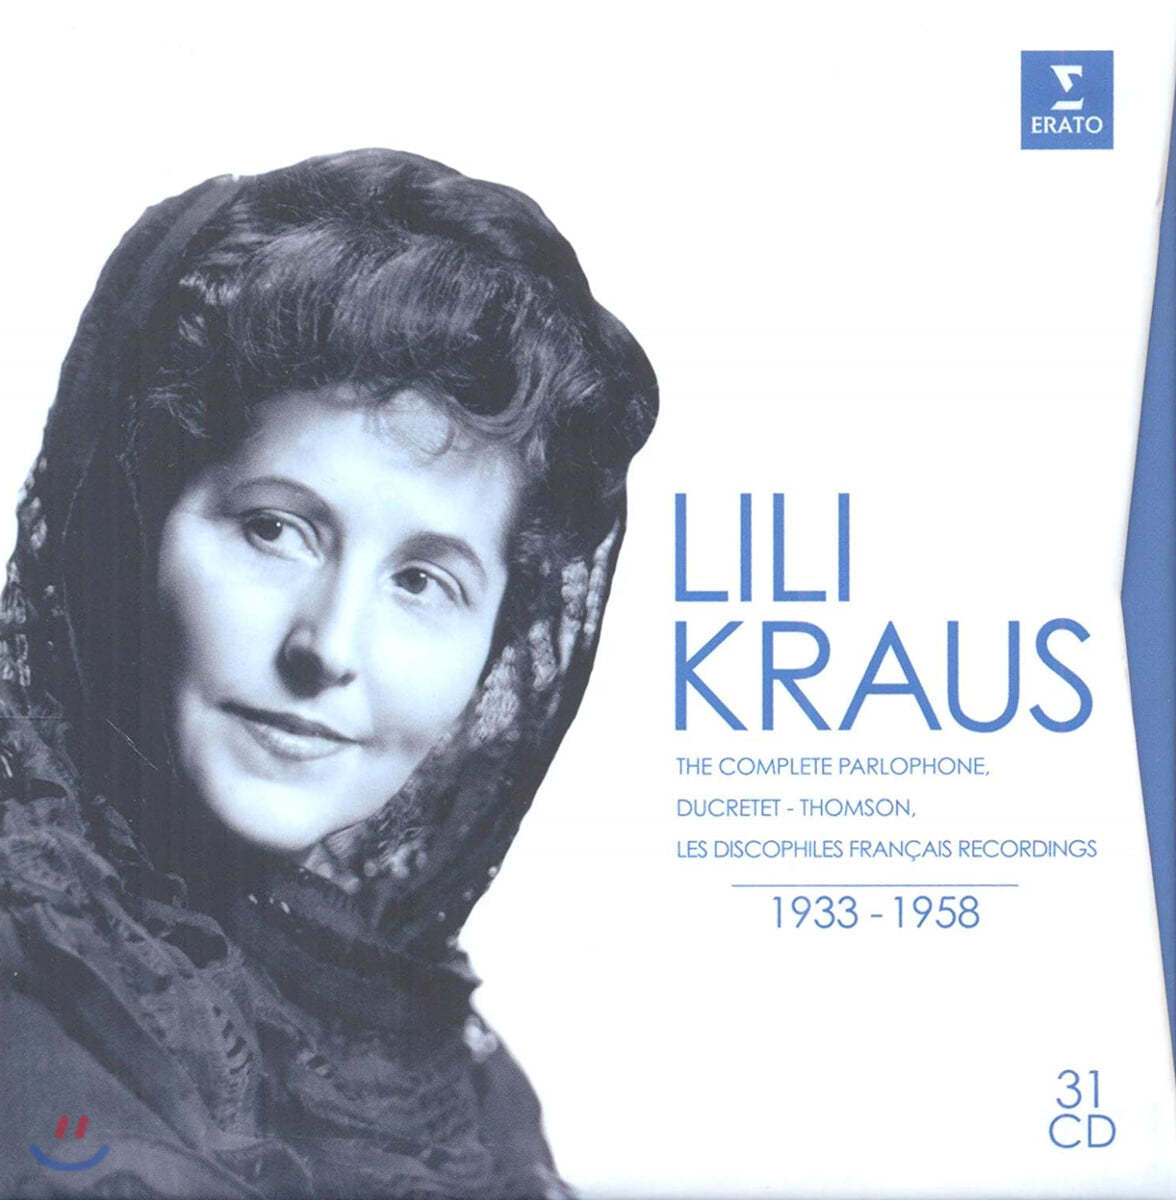 릴리 크라우스 피아노 녹음 전곡집 (Lili Kraus - The Complete Parlophone, Ducretet, Thomson & Discophiles Francais recordings 1933-1958)